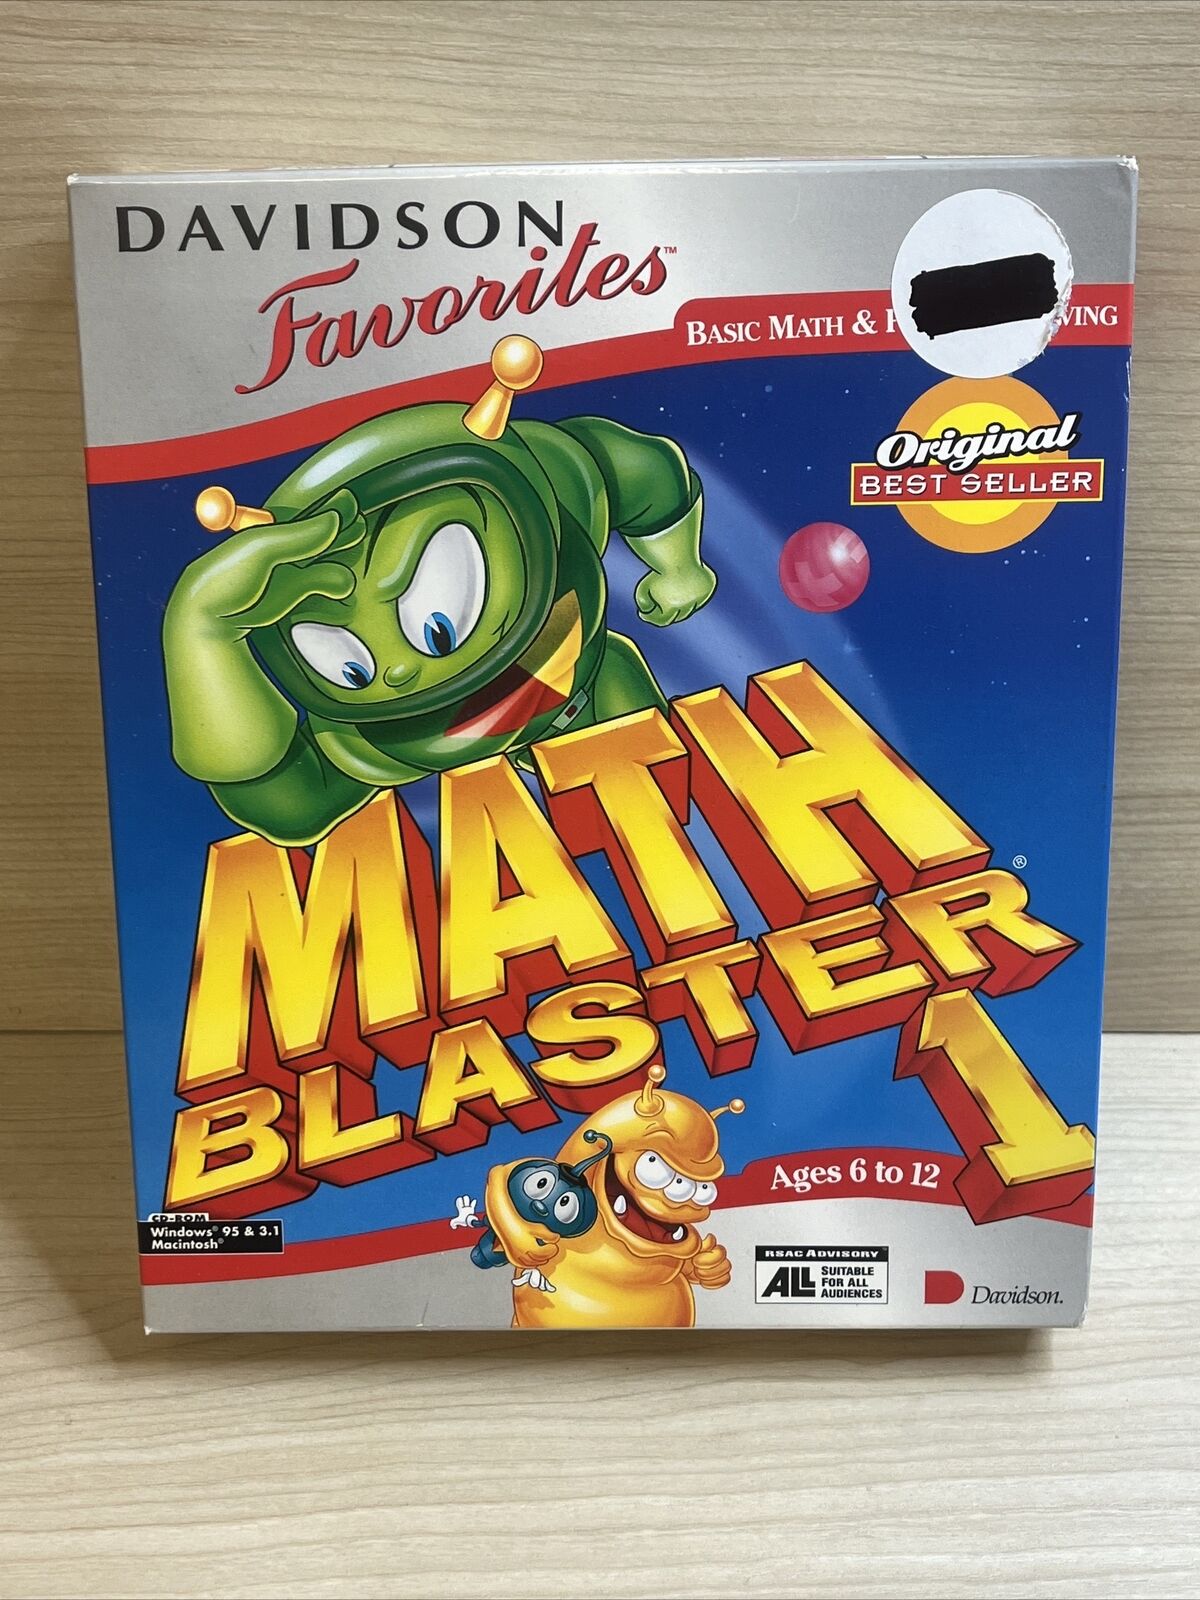 Davidson Math Blaster 1 For Windows 95 3.1 PC Game Teaching Vintage 1995 Sealed